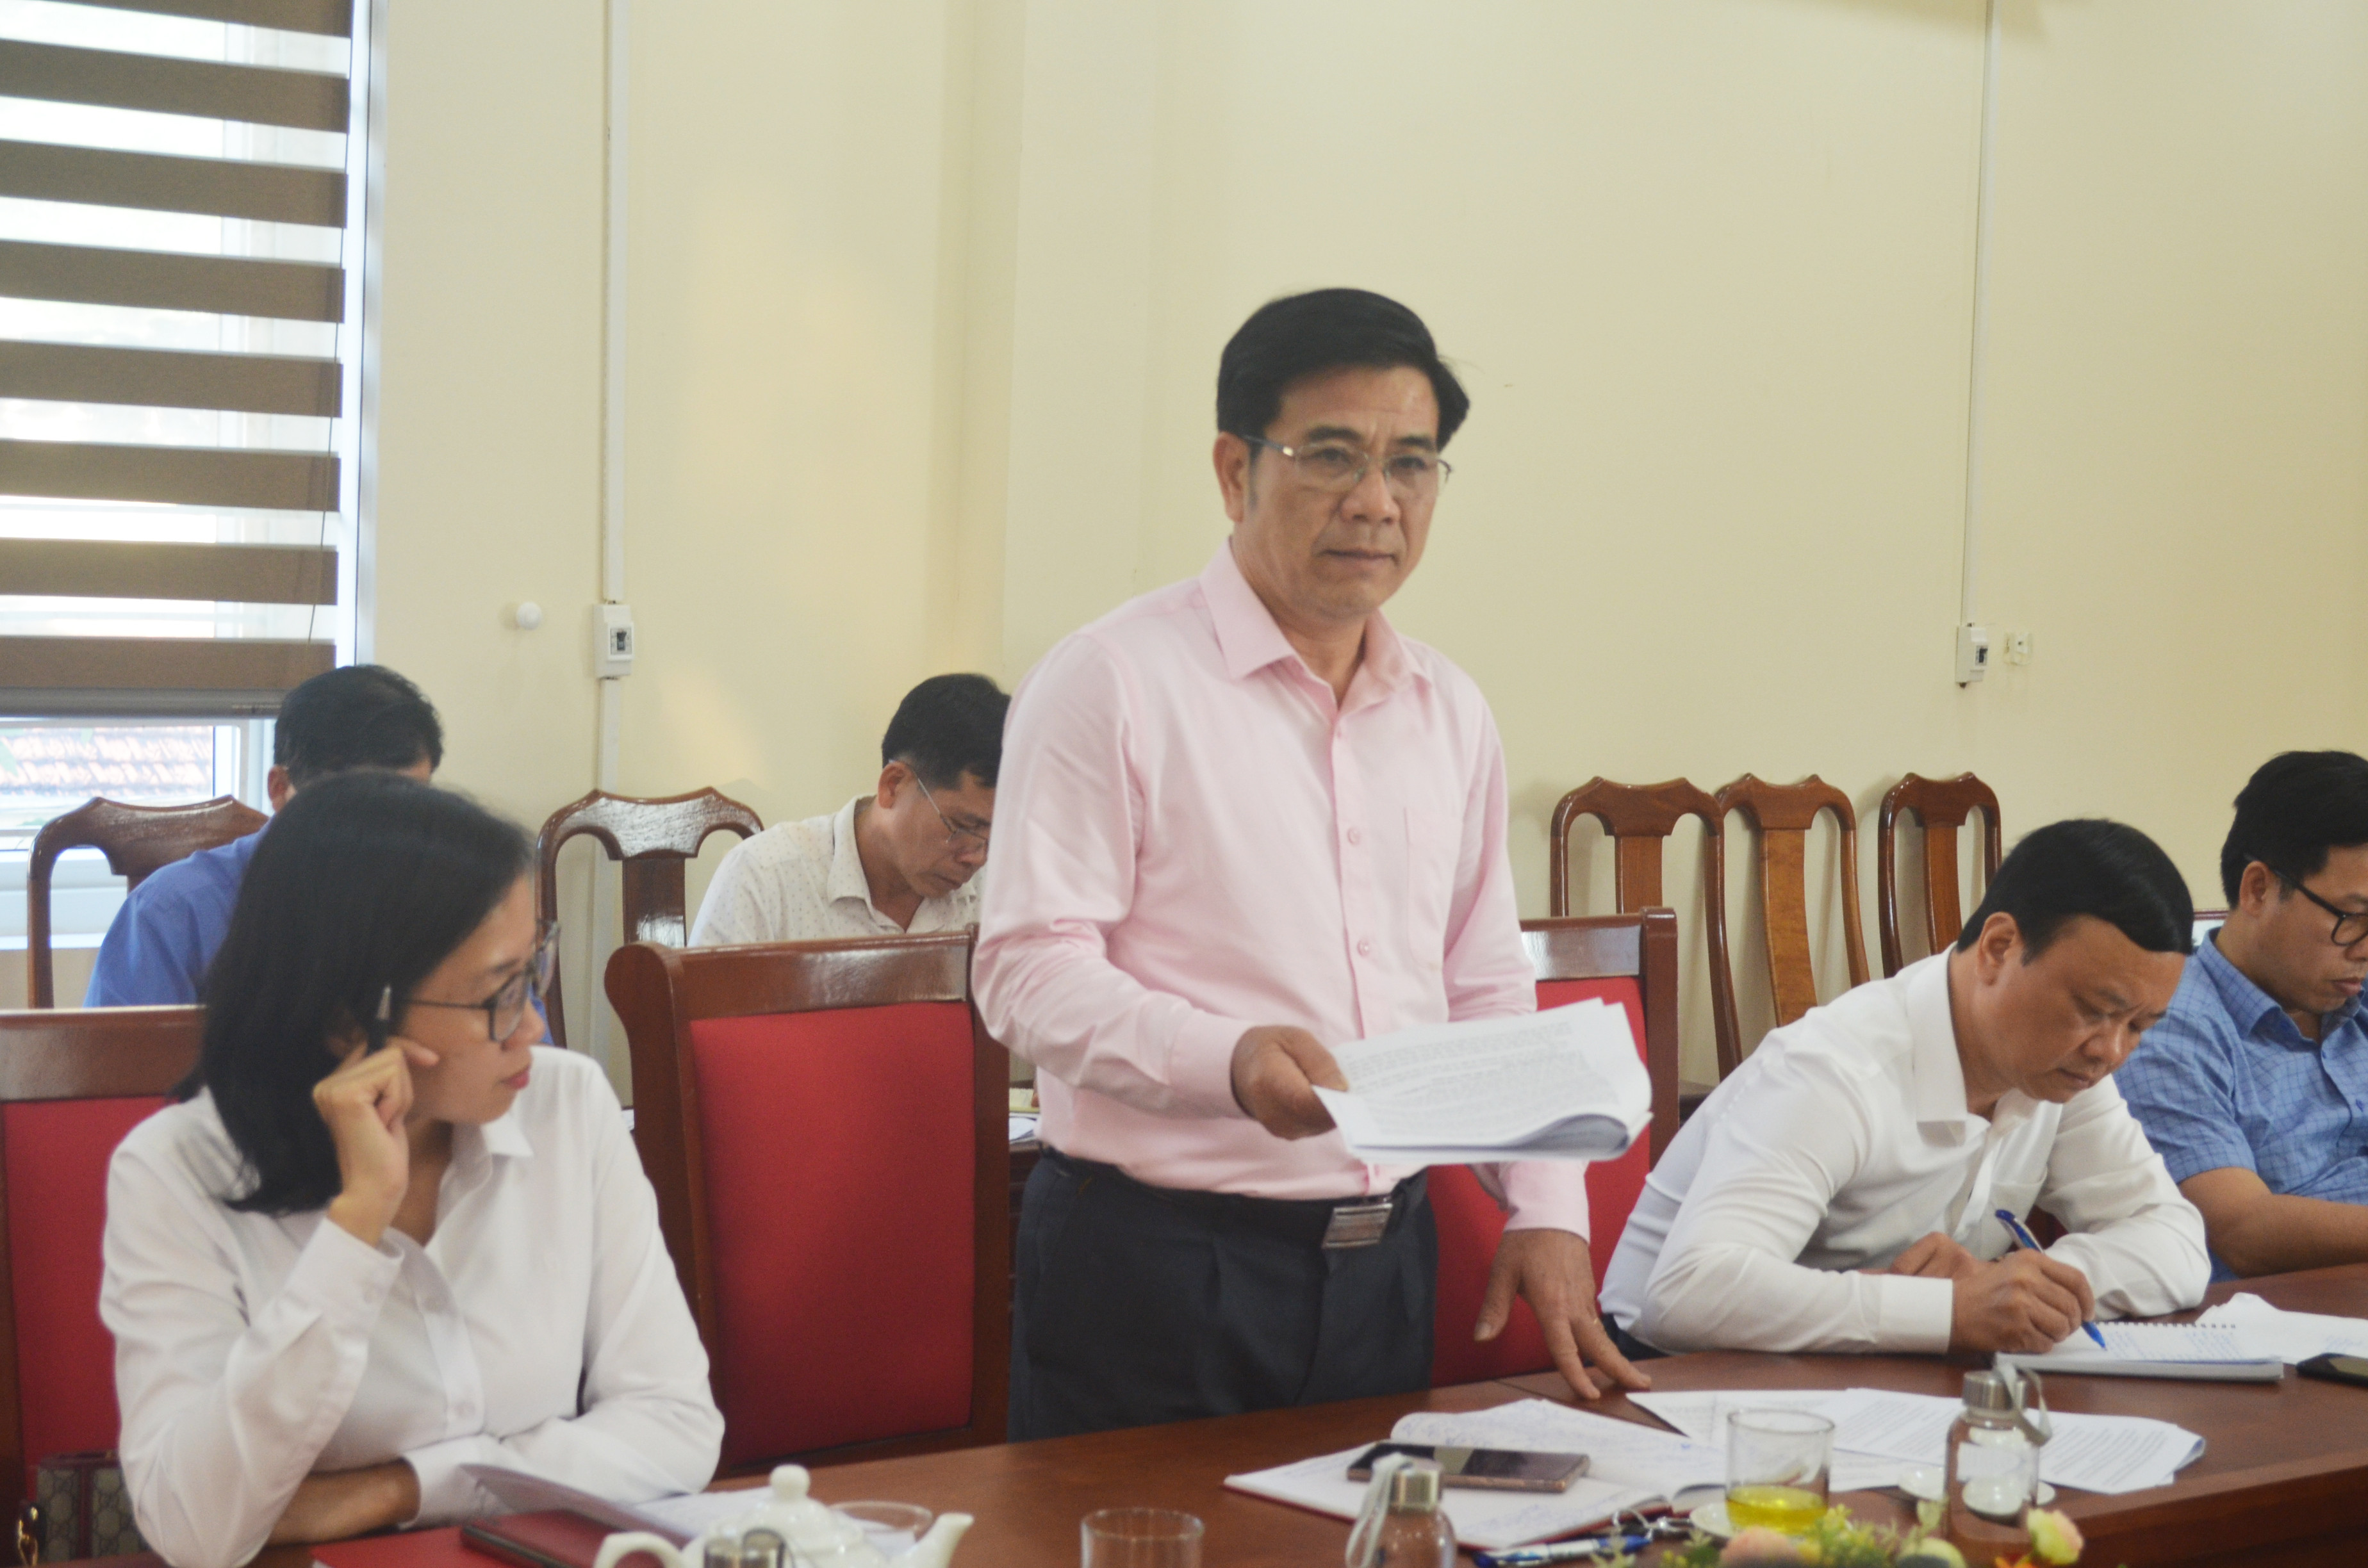 Chủ tịch UBND huyện Tương Dương, ông Phan Đức Sơn: “Thiếu thì thêm, sai thì sửa, đề nghị VNPD thực hiện rà soát lại, cần khẩn trương, đảm bảo tiến độ theo cam kết”. Ảnh: Nhật Lân